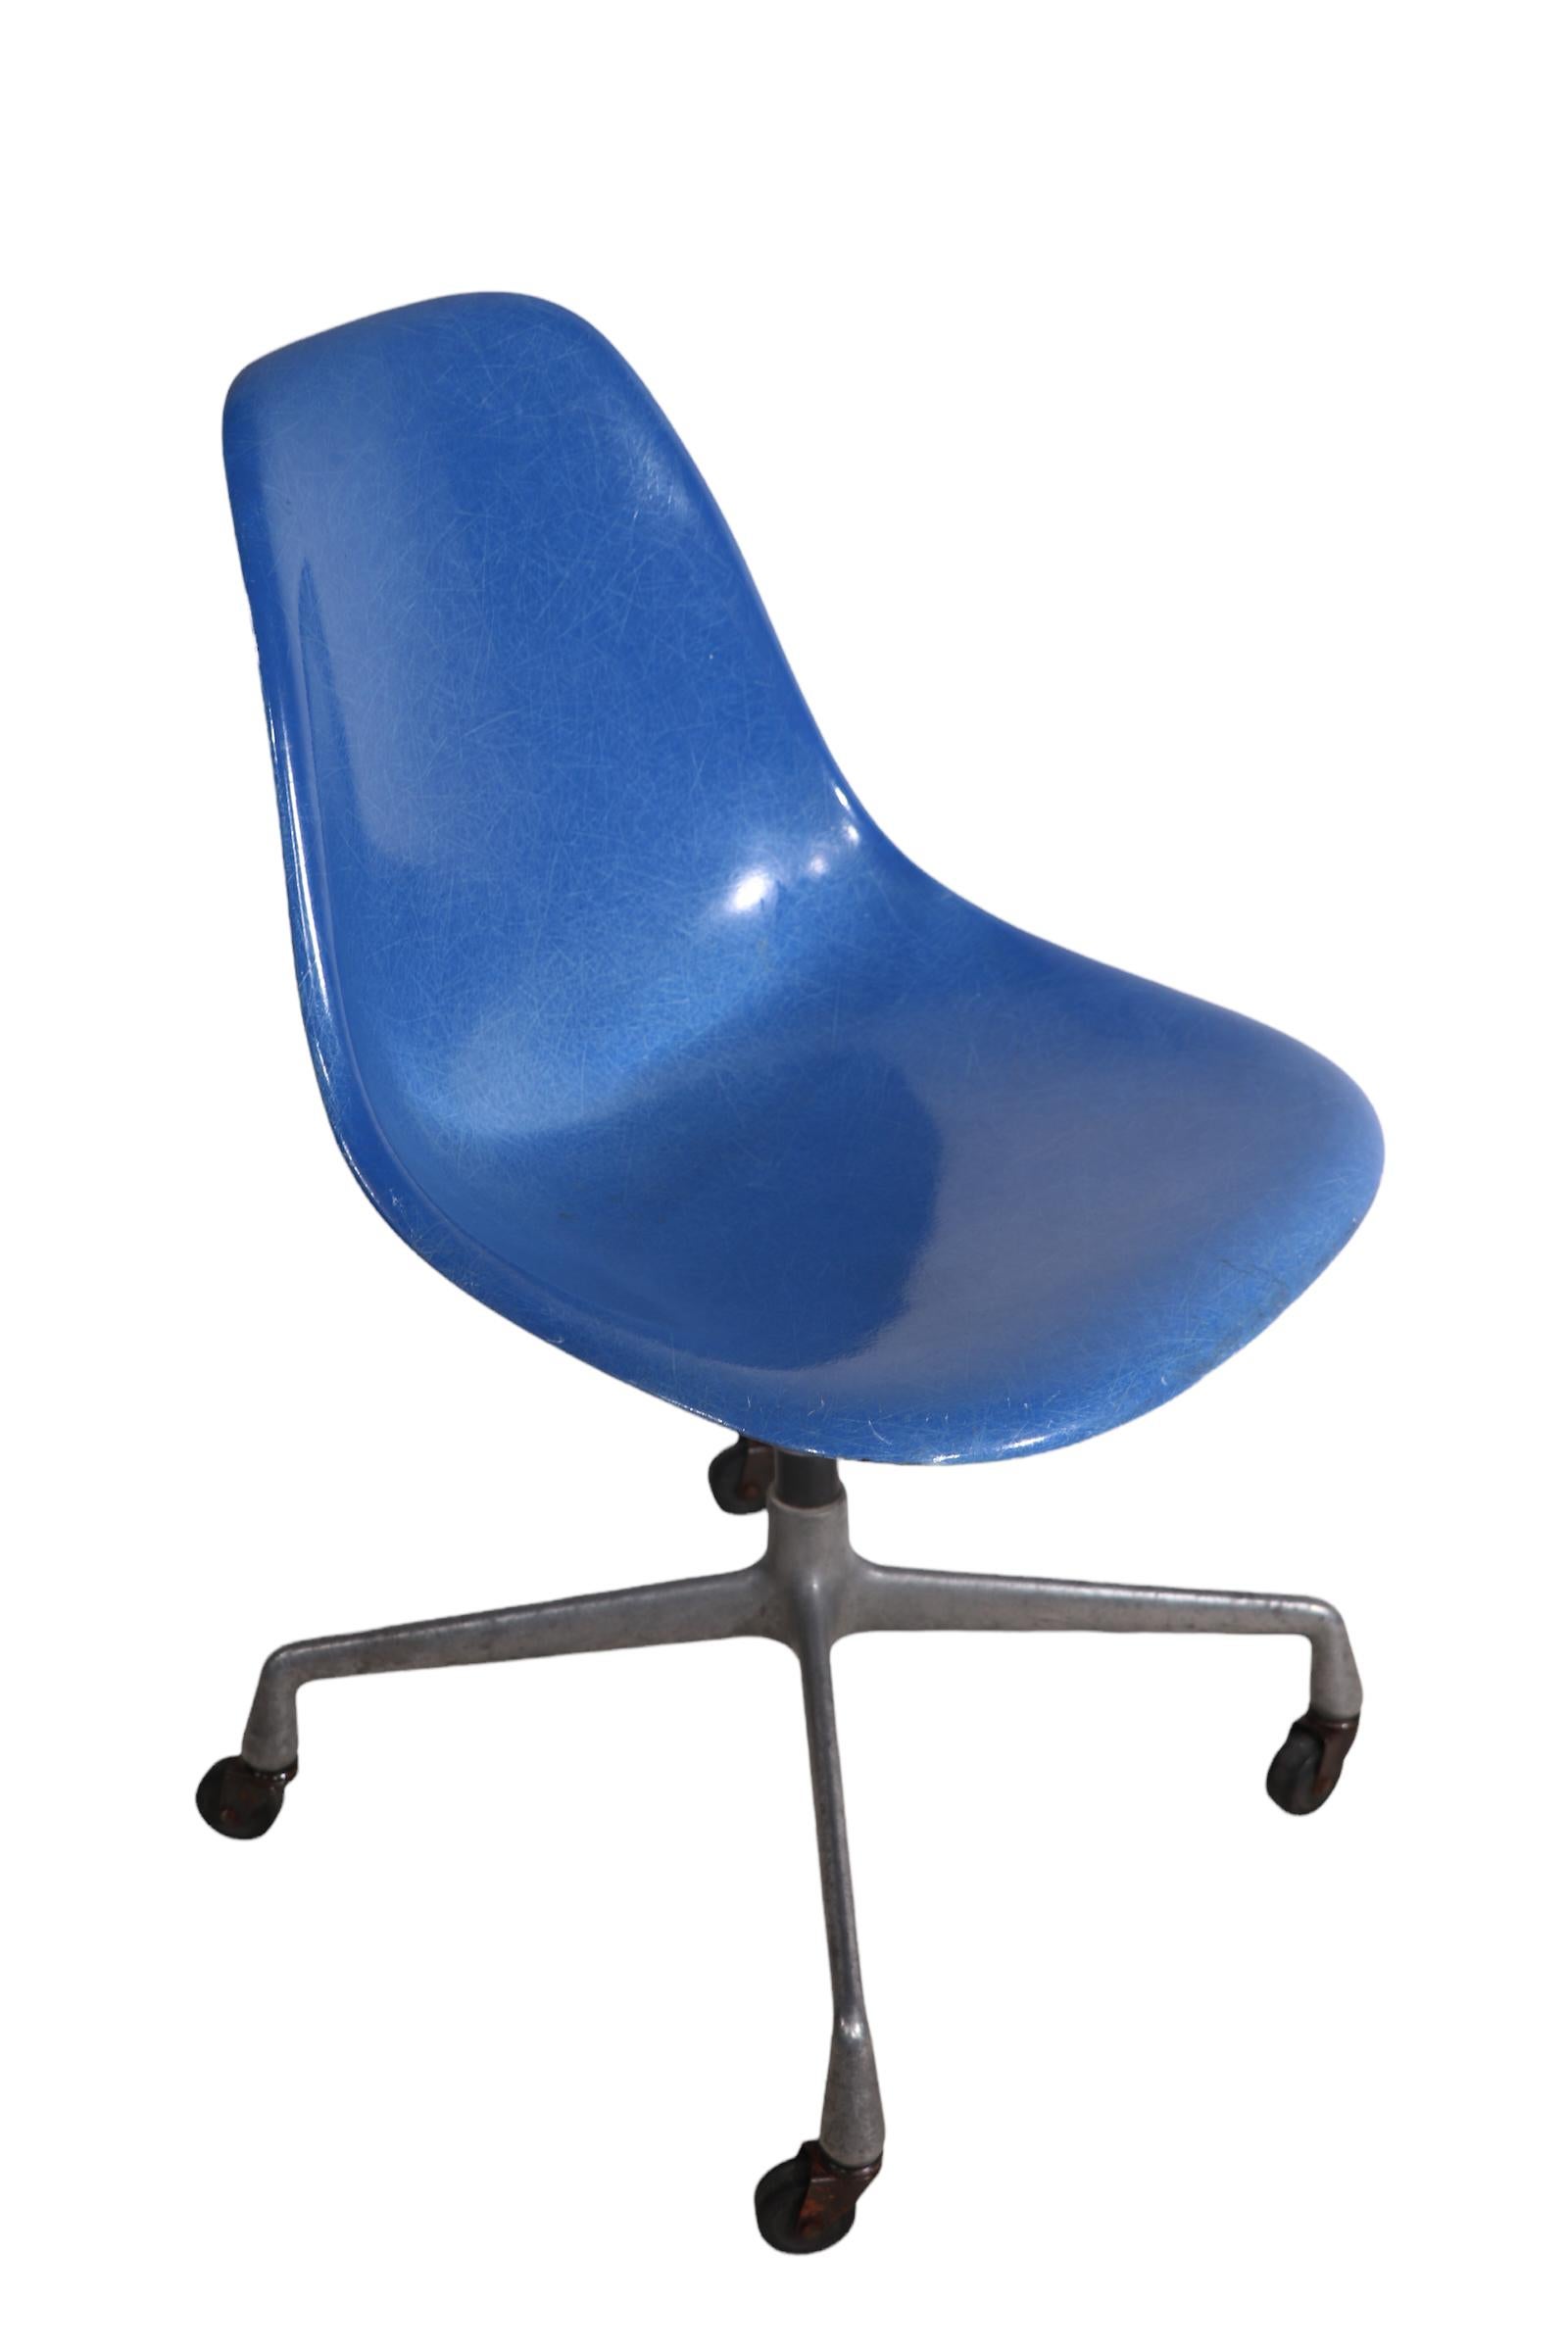 Eames Herman Miller Aluminum Base Swivel Desk Office Chair in Blue Fiberglass For Sale 2